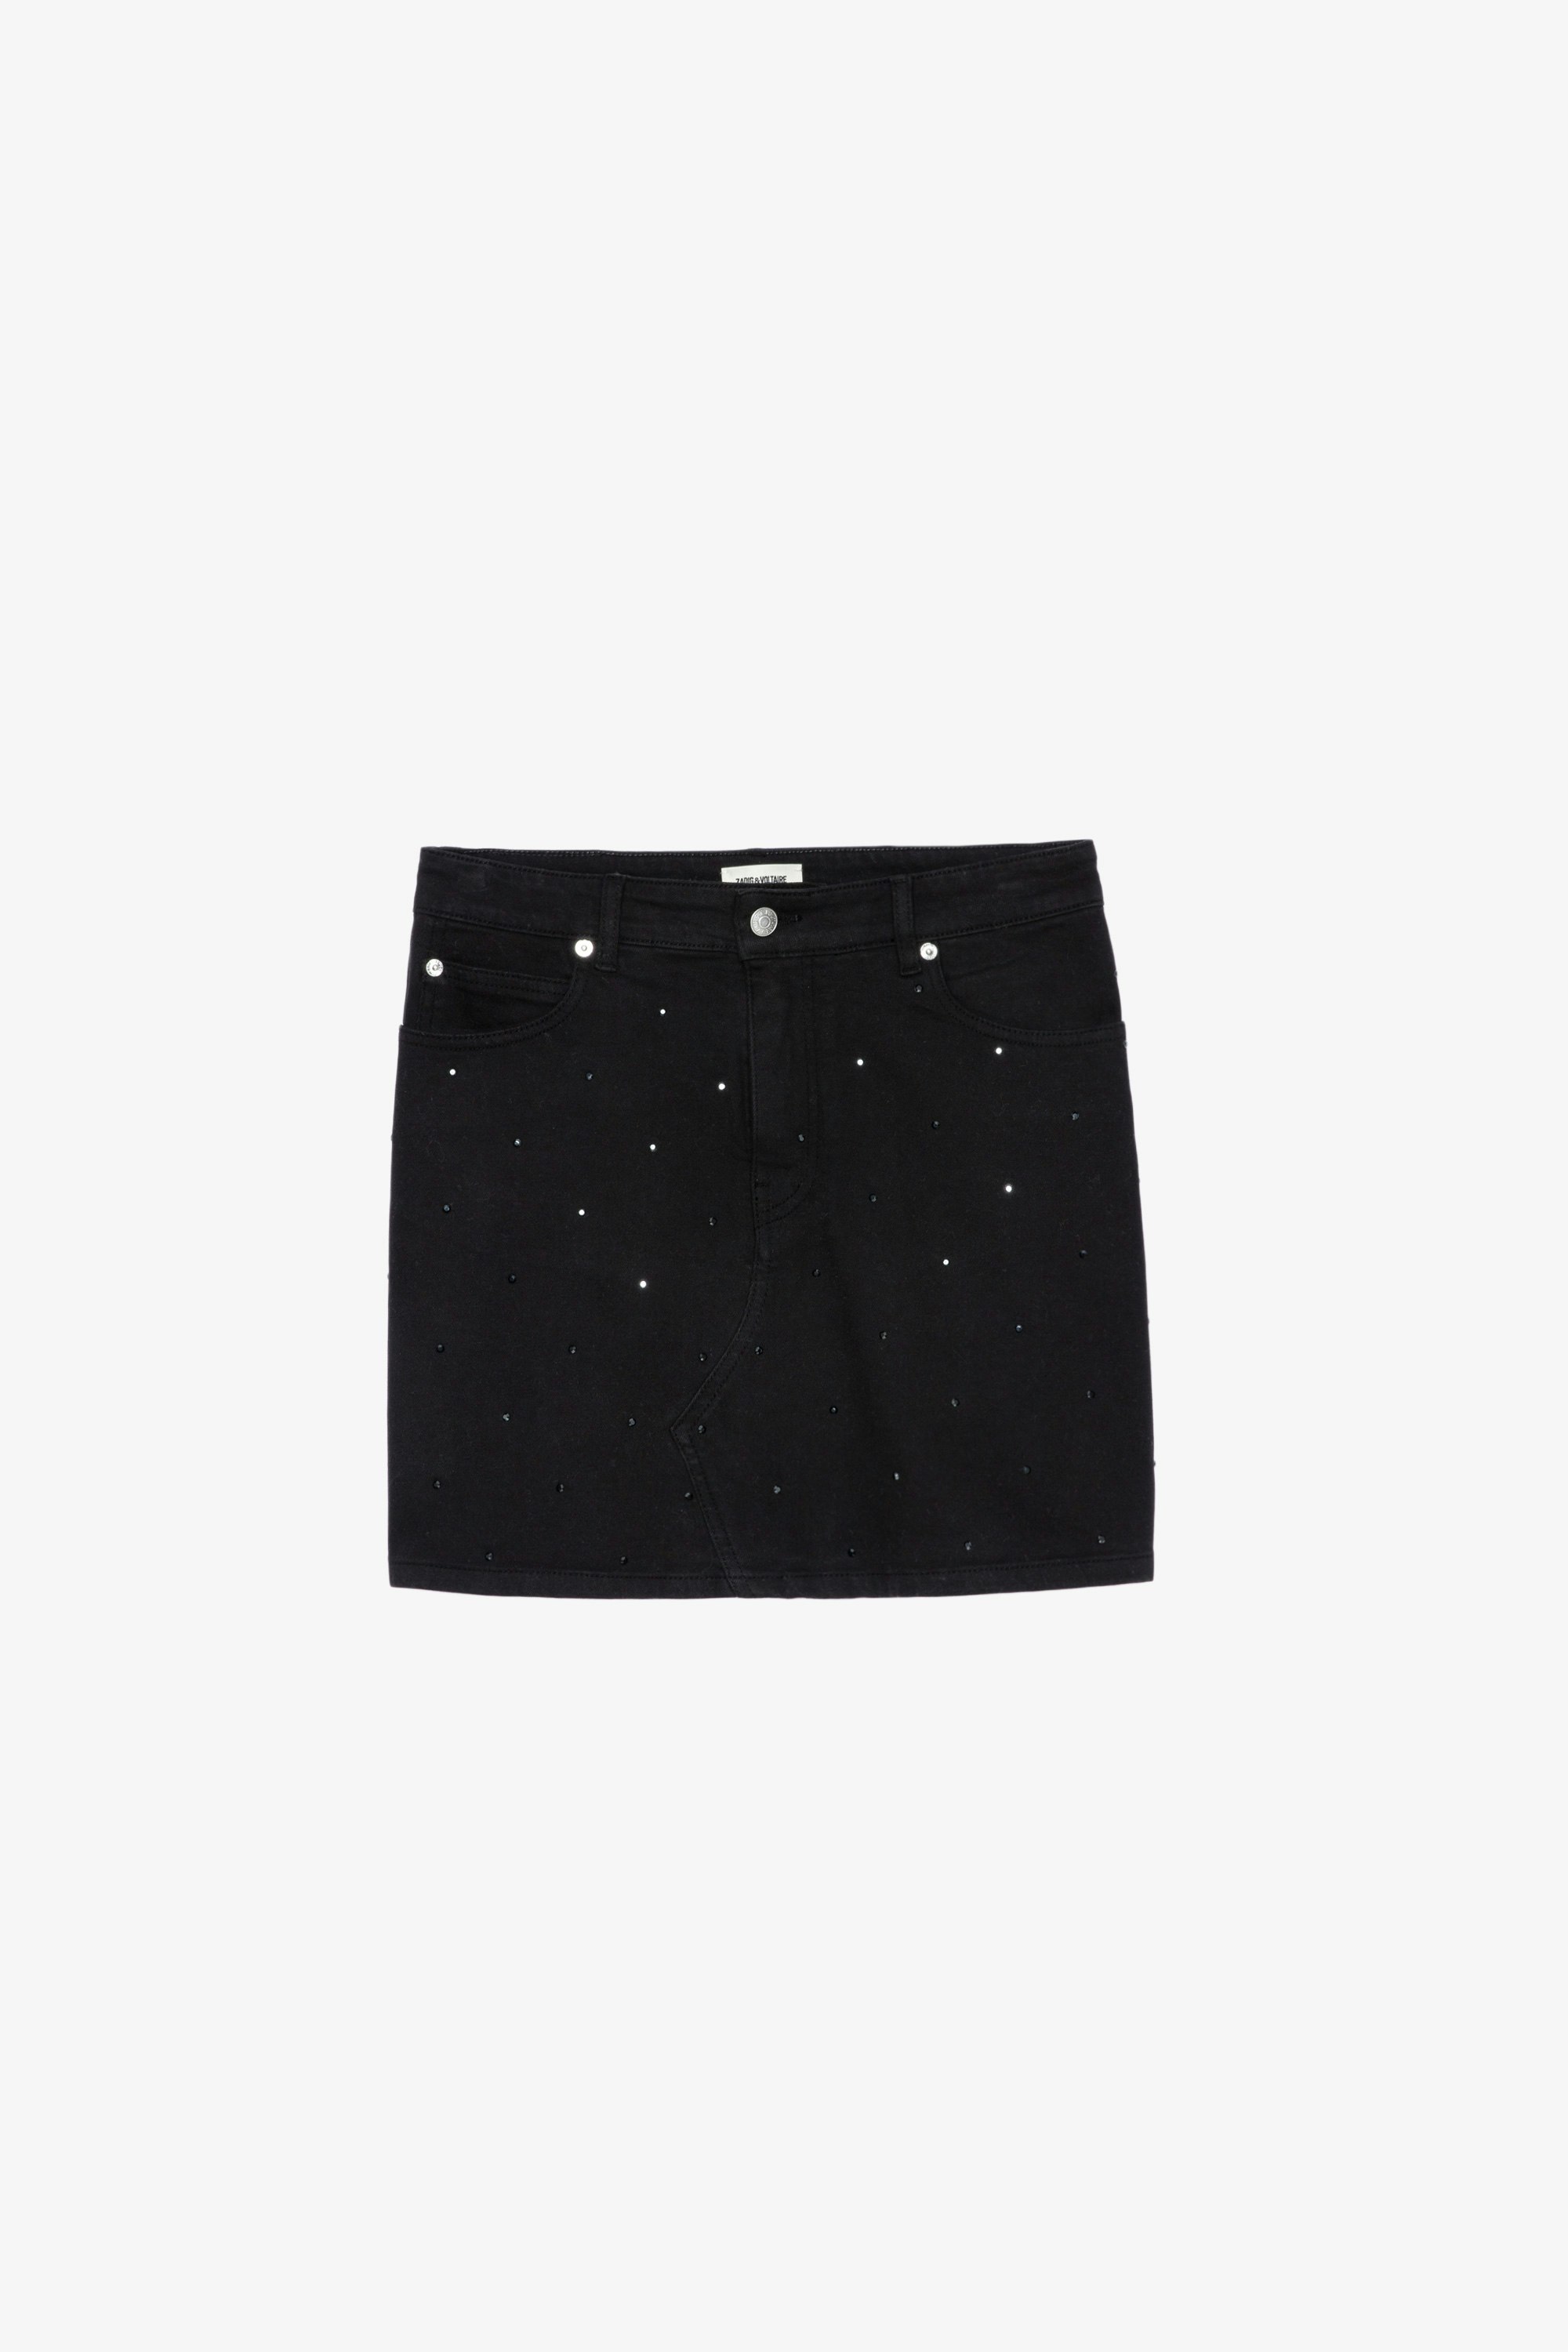 Juice デニム スカート Women’s black denim short skirt